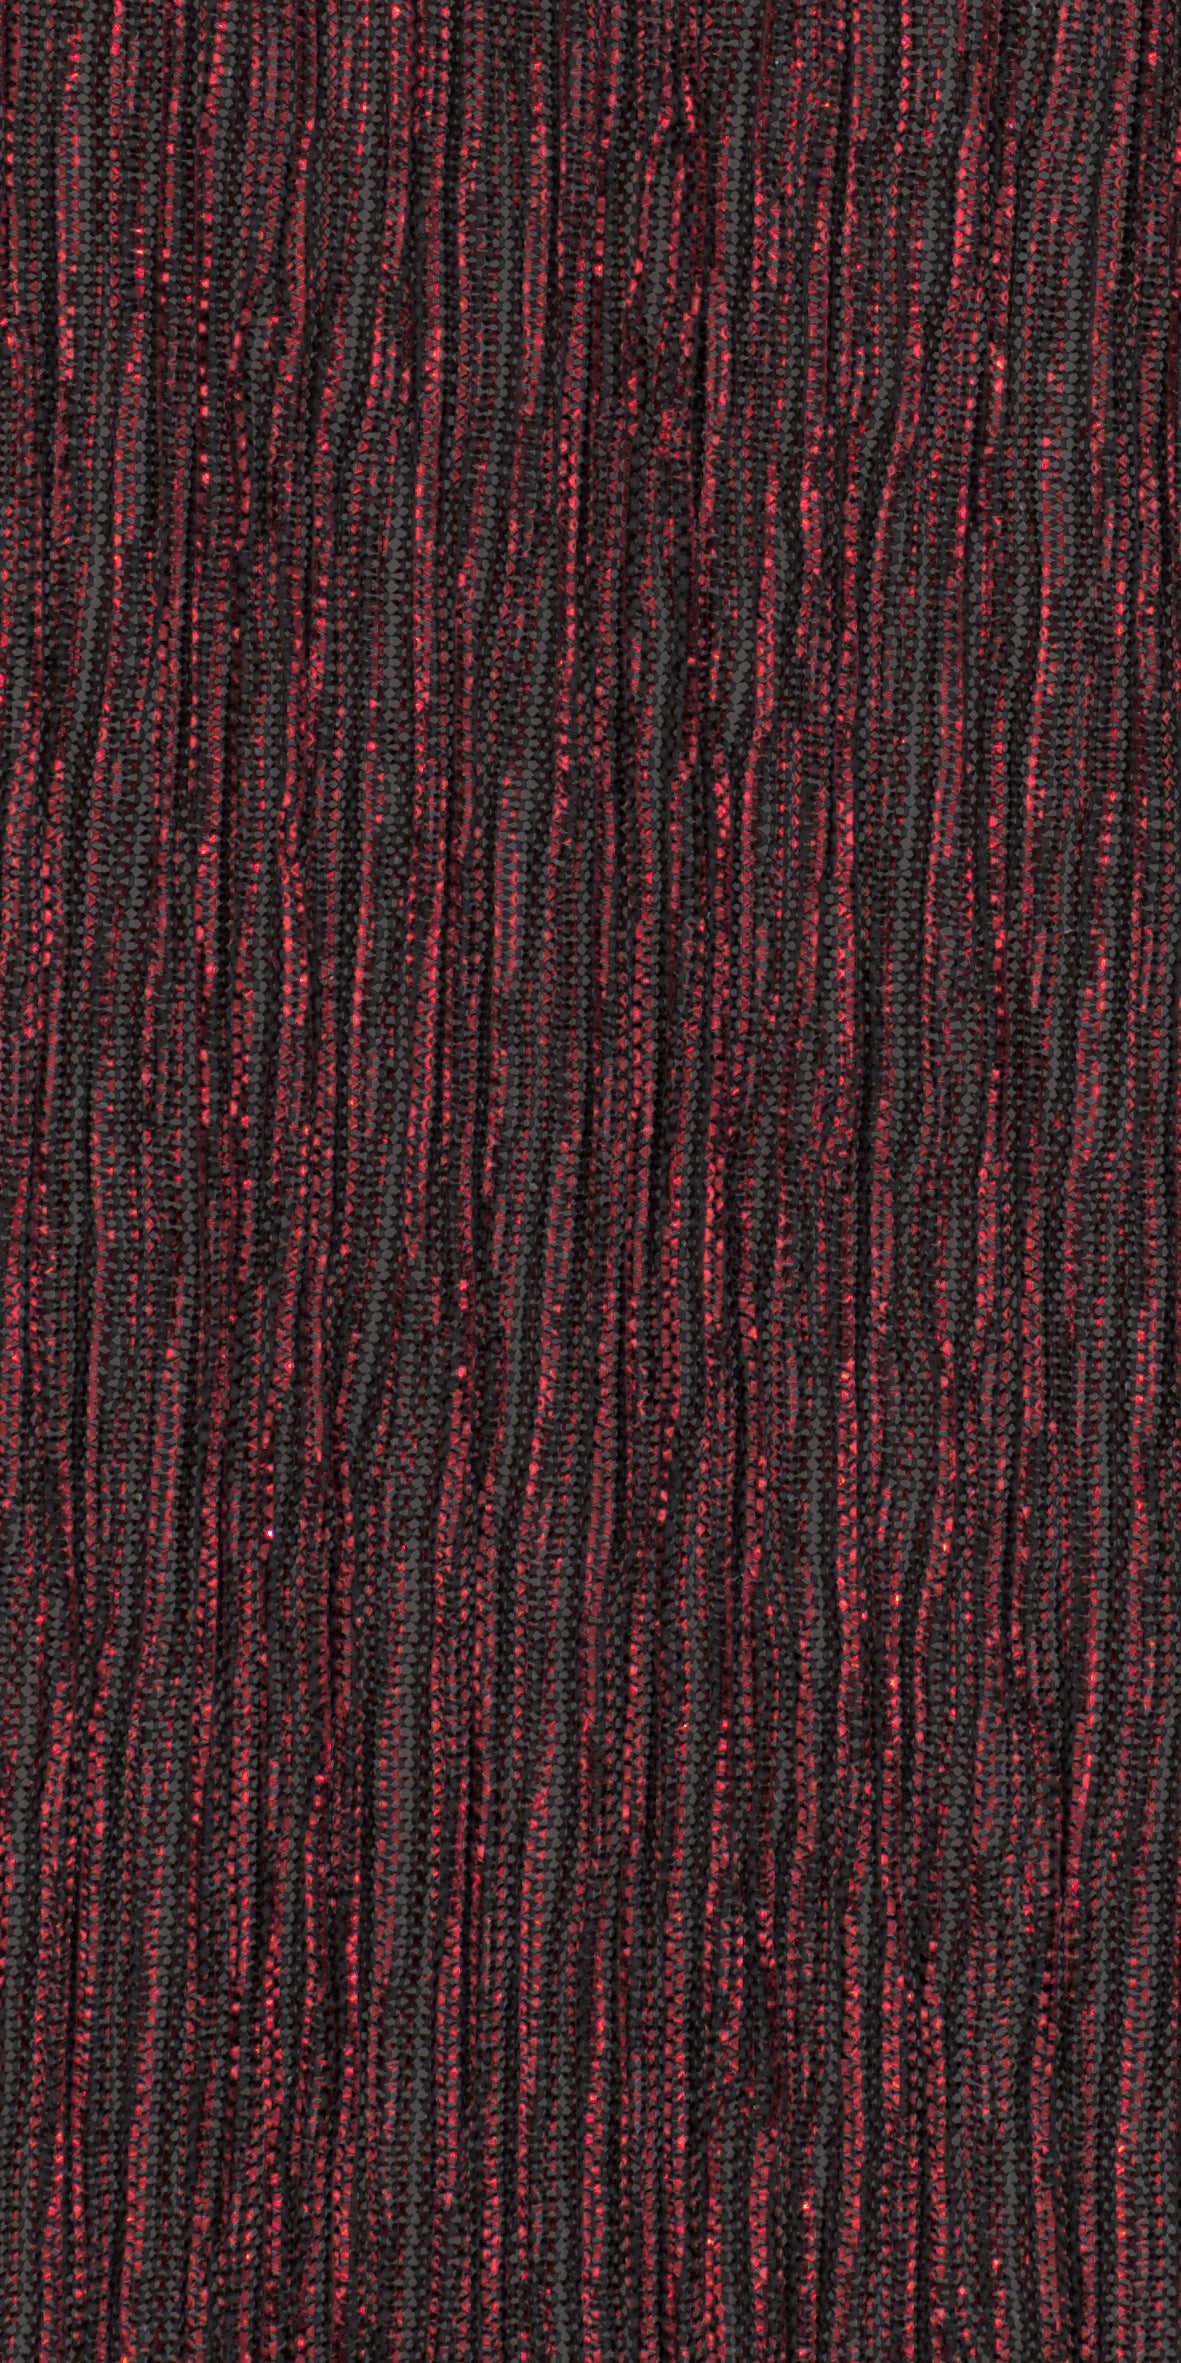 12006-20 Black Red Metallic Pleat Plain Dyed Blend 126g/yd 56" blend knit metallic plain dyed pleat ppl new red Metallic, Pleat - knit fabric - woven fabric - fabric company - fabric wholesale - fabric b2b - fabric factory - high quality fabric - hong kong fabric - fabric hk - acetate fabric - cotton fabric - linen fabric - metallic fabric - nylon fabric - polyester fabric - spandex fabric - chun wing hing - cwh hk - fabric worldwide ship - 針織布 - 梳織布 - 布料公司- 布料批發 - 香港布料 - 秦榮興